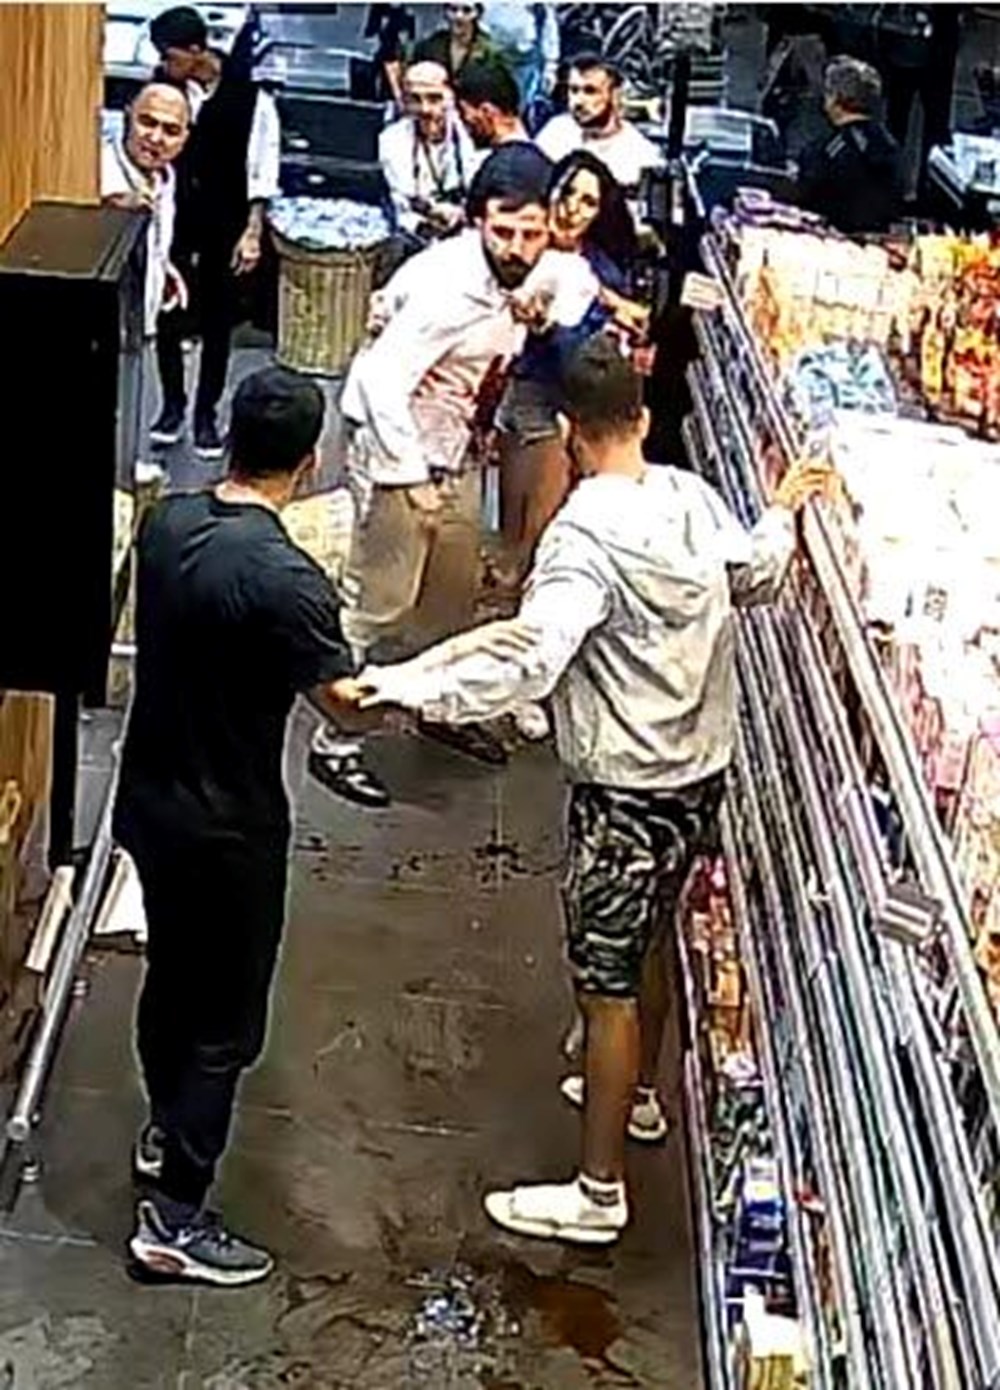 İzmir’de marketteki dehşet anlarının görüntüsü ortaya çıktı |Cinayet şüphelisi: “Adam çakının üzerine düştü” - 9